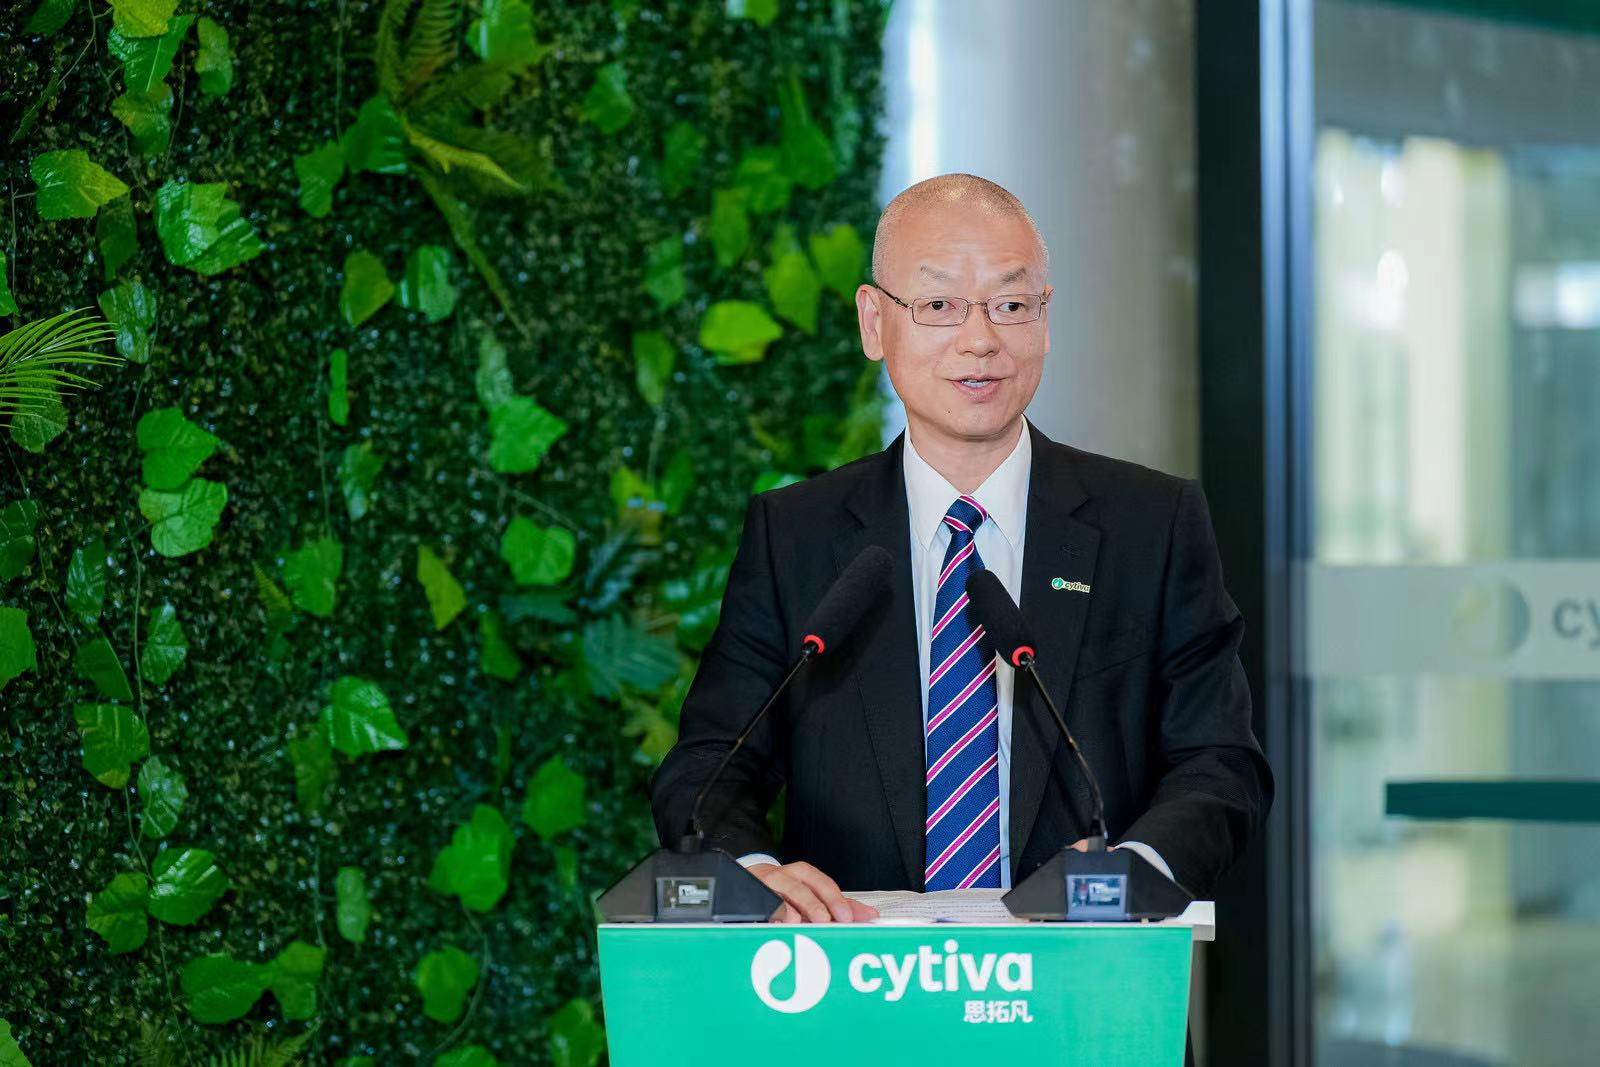 Edward Zhou, President of Cytiva in China